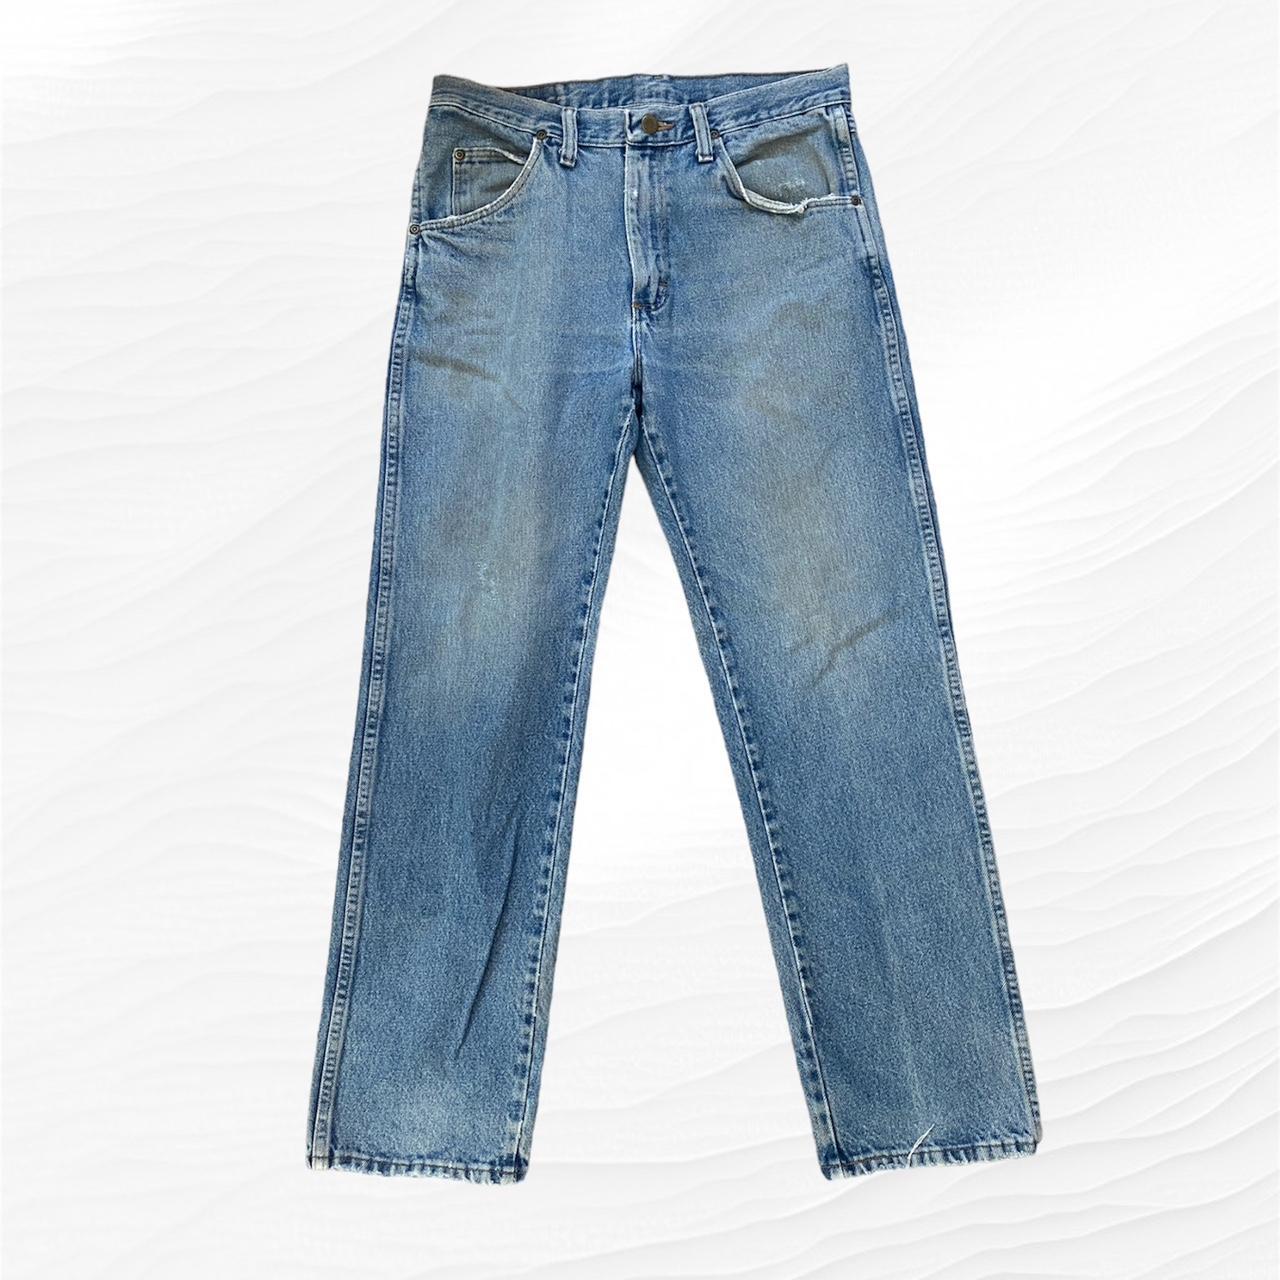 vintage wrangler jeans in light wash denim. size... - Depop